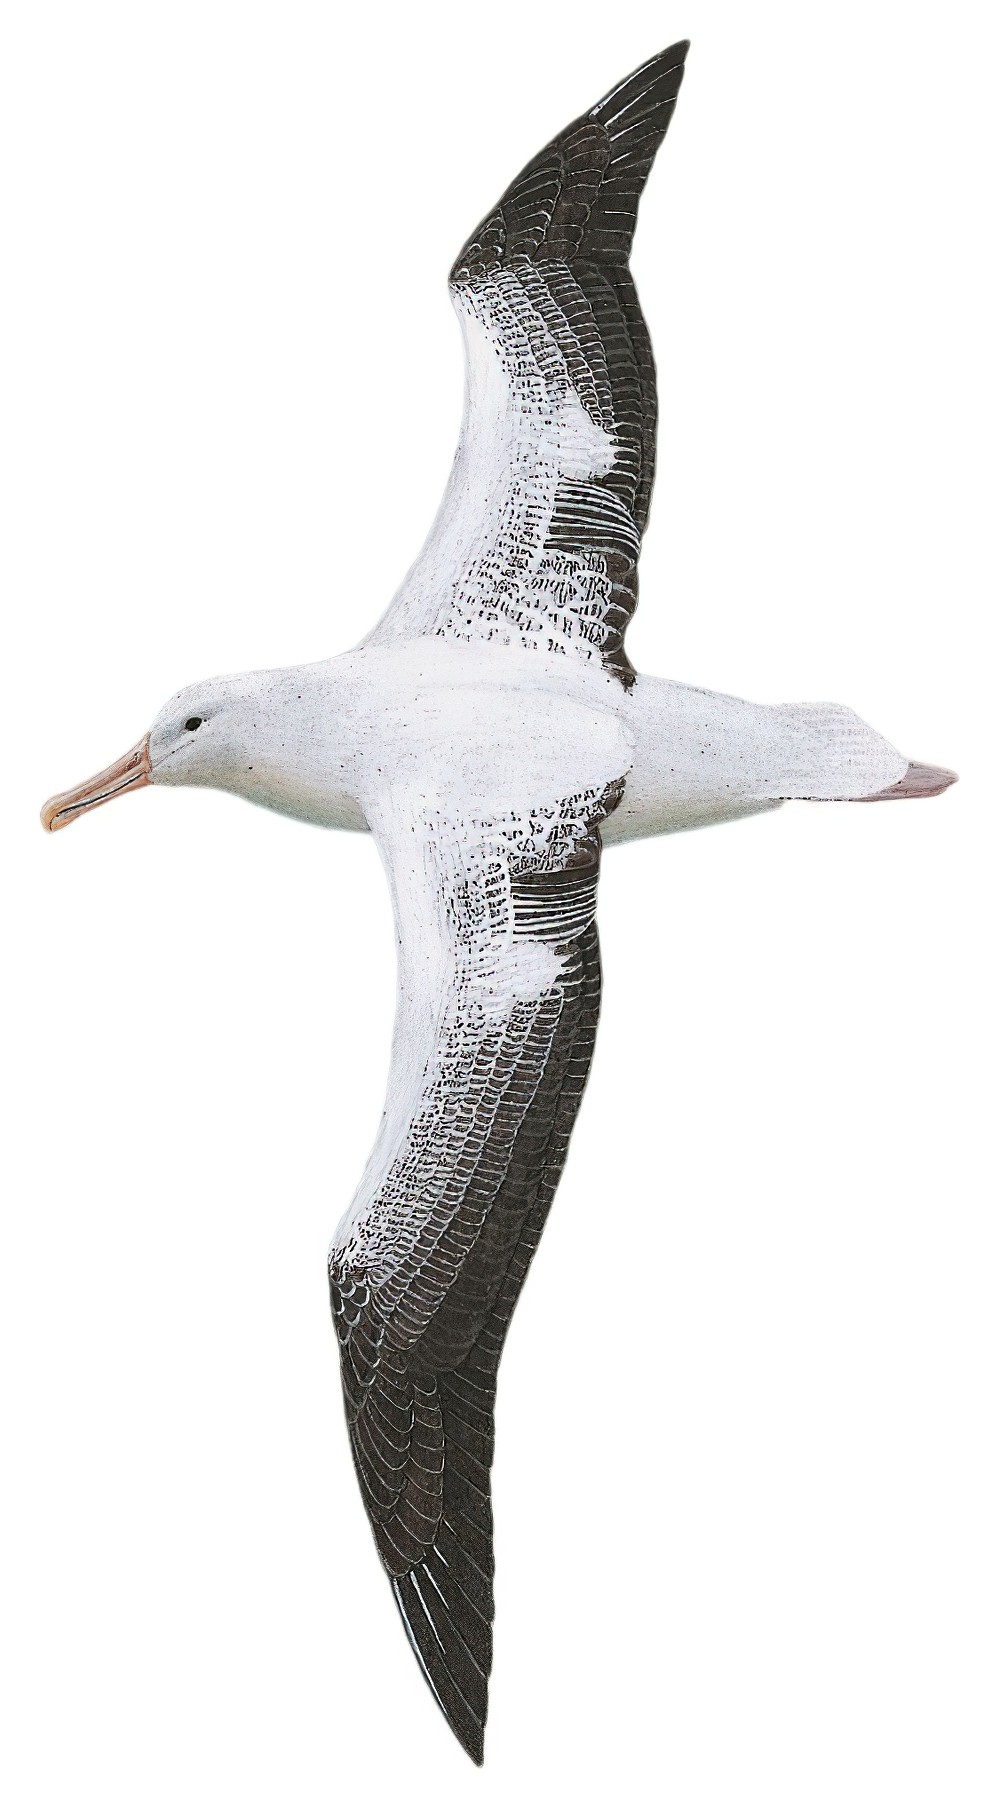 Royal Albatross / Diomedea epomophora